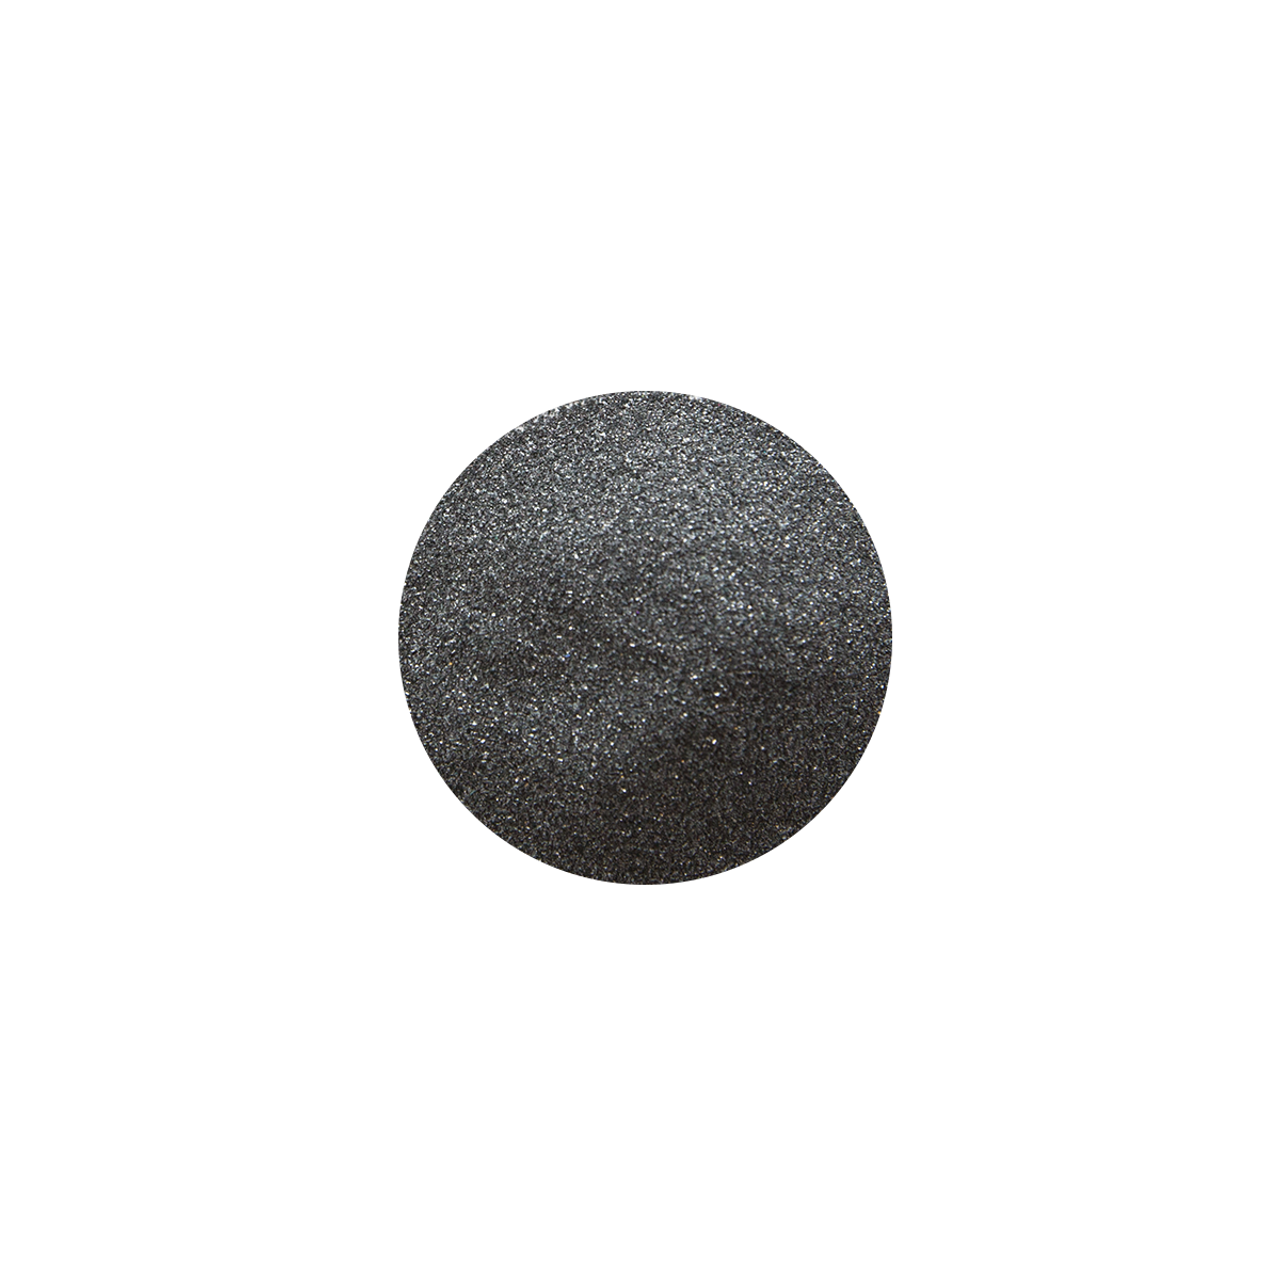 Stone Polishing Abrasive 80 Grit - 450g